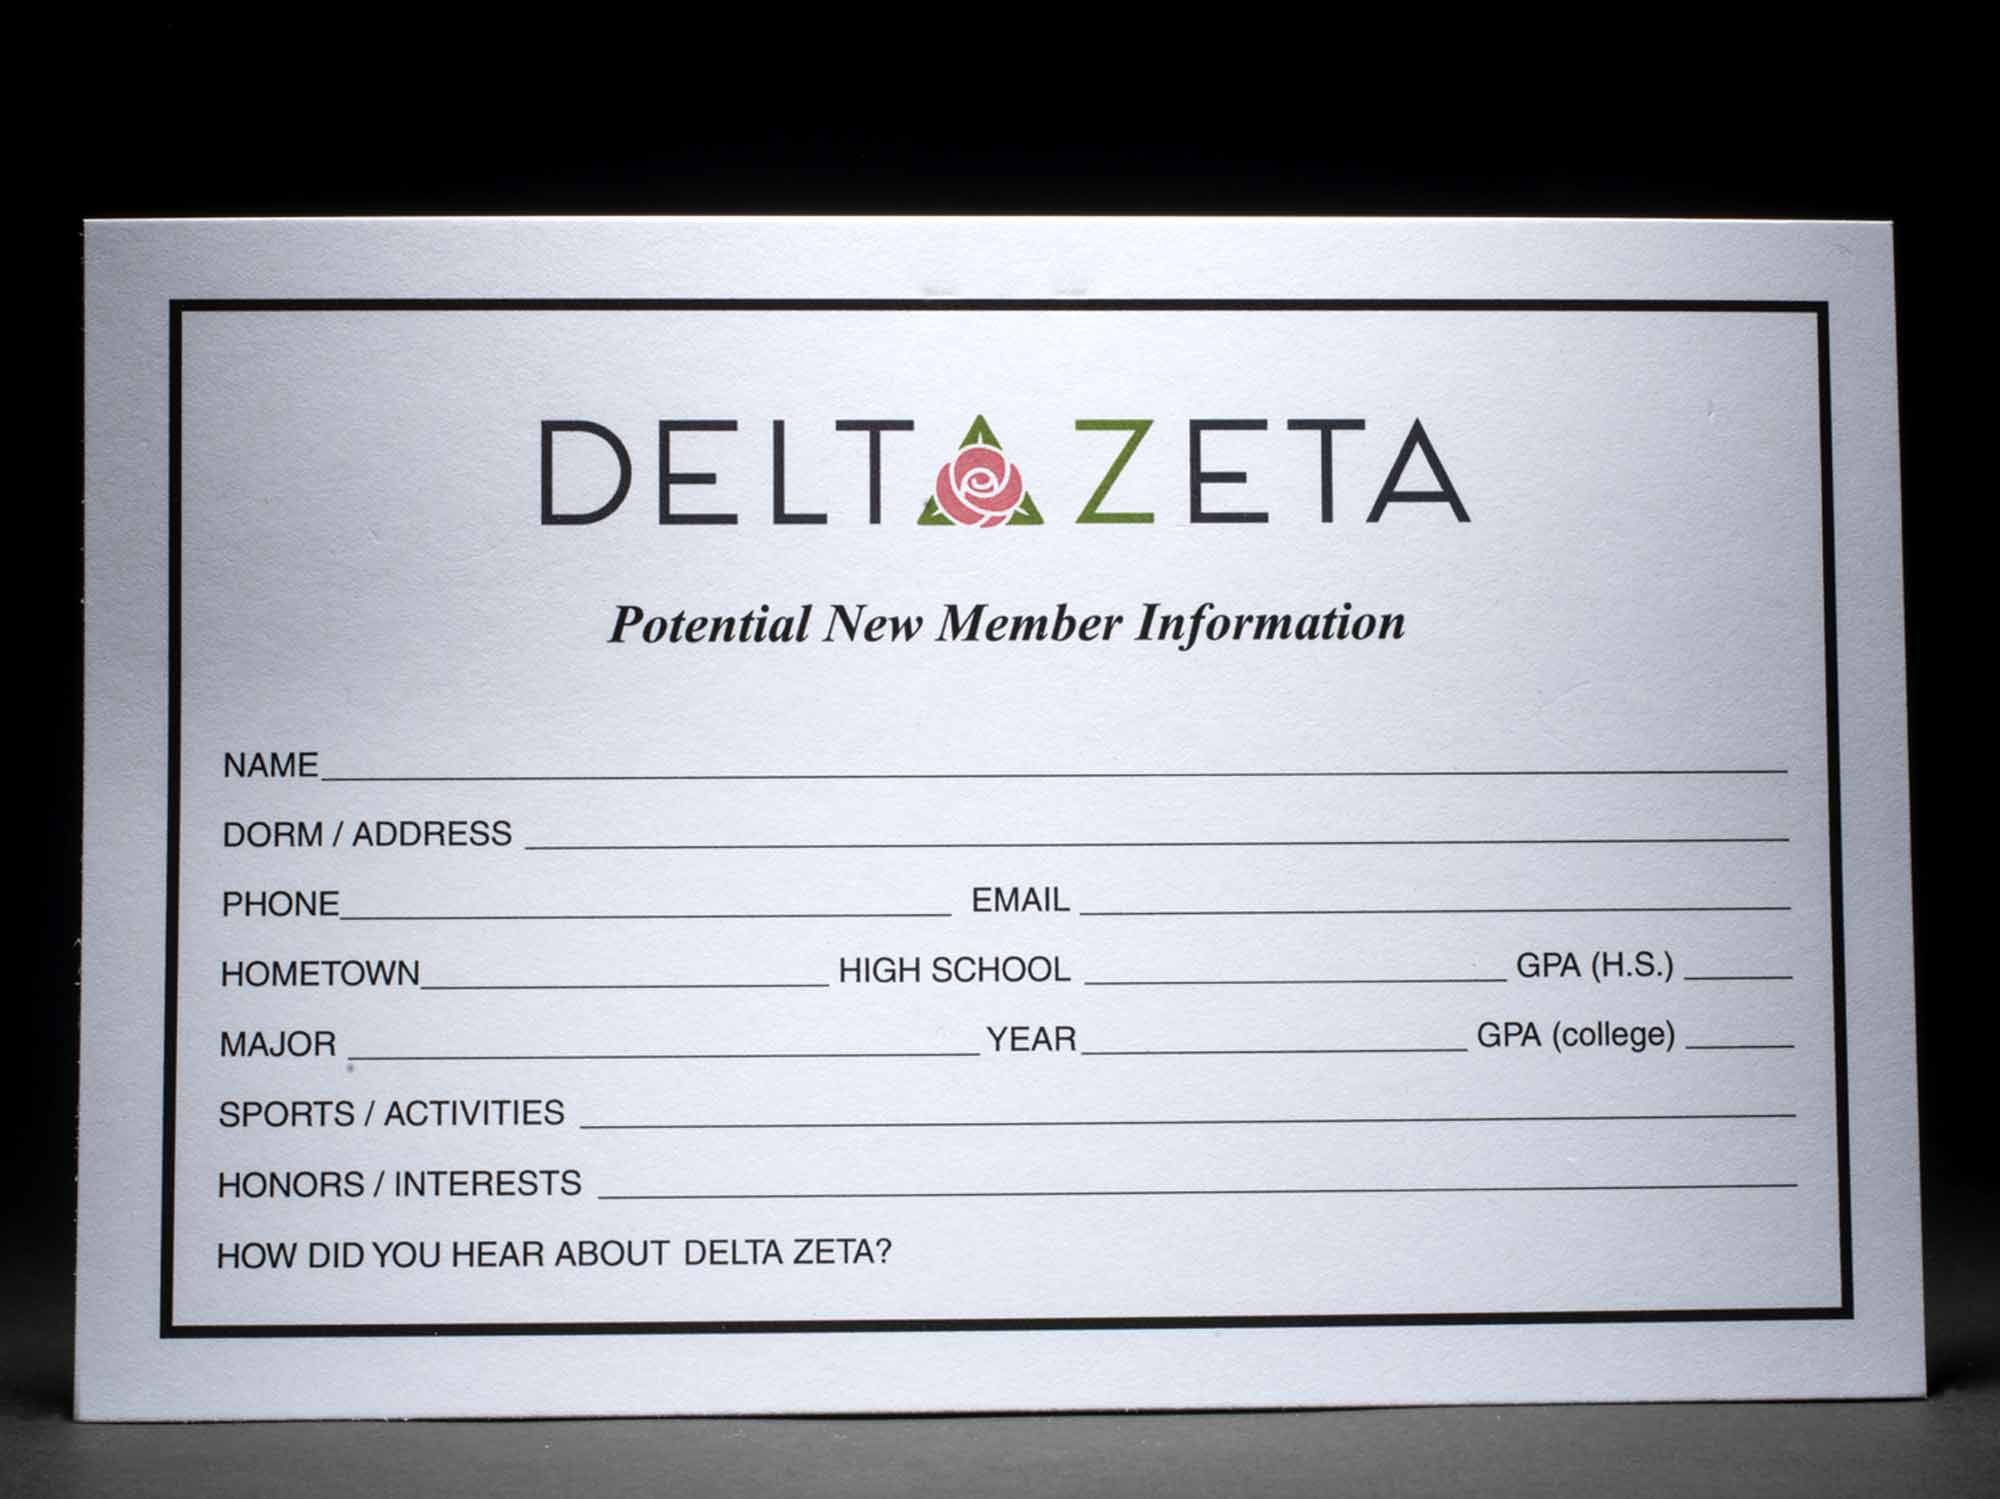 Rushee Information Cards Delta Zeta